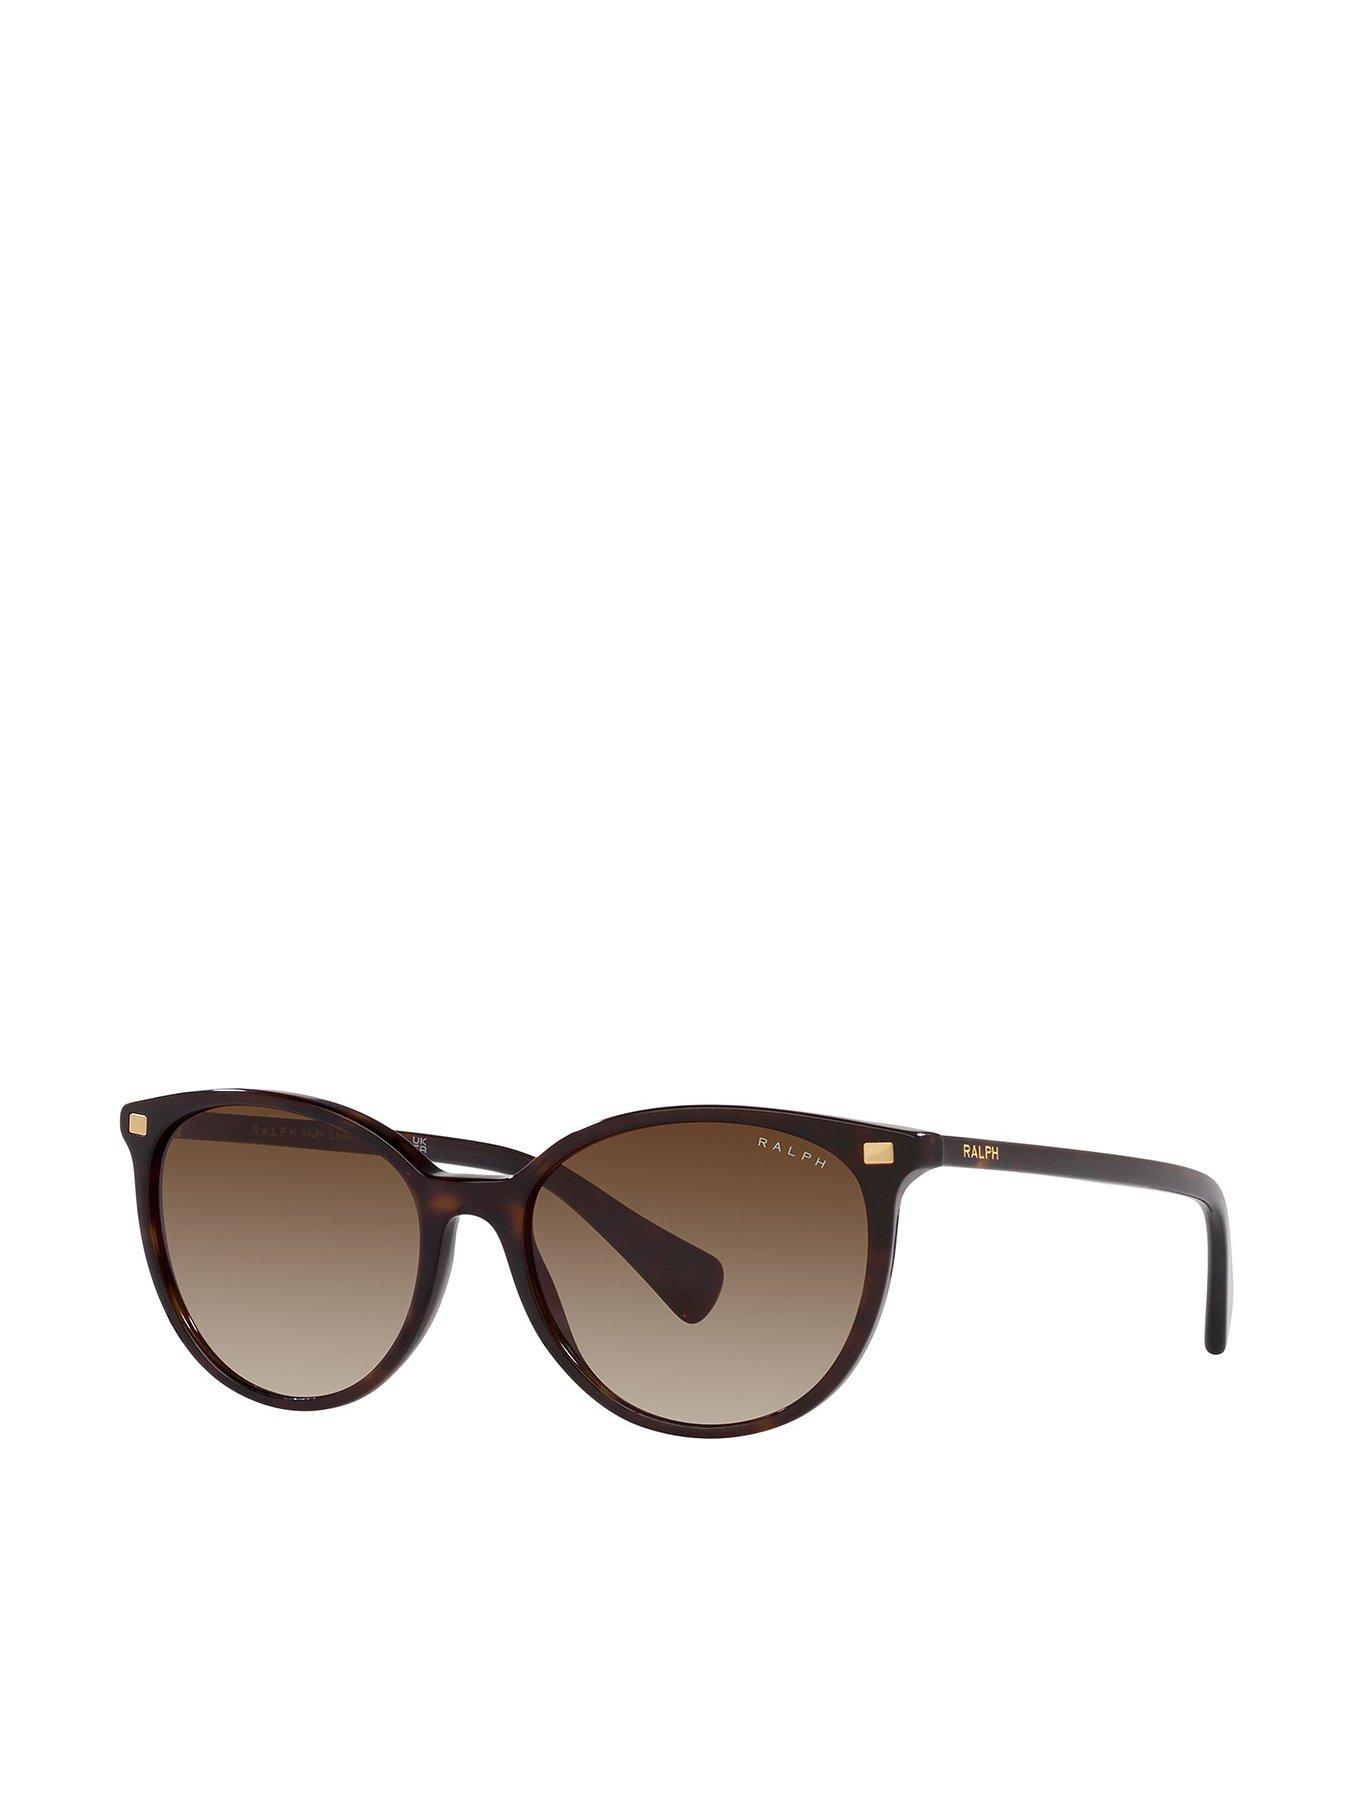 Brown Single WOMEN FASHION Accessories Sunglasses discount 72% CIERZO sunglasses 